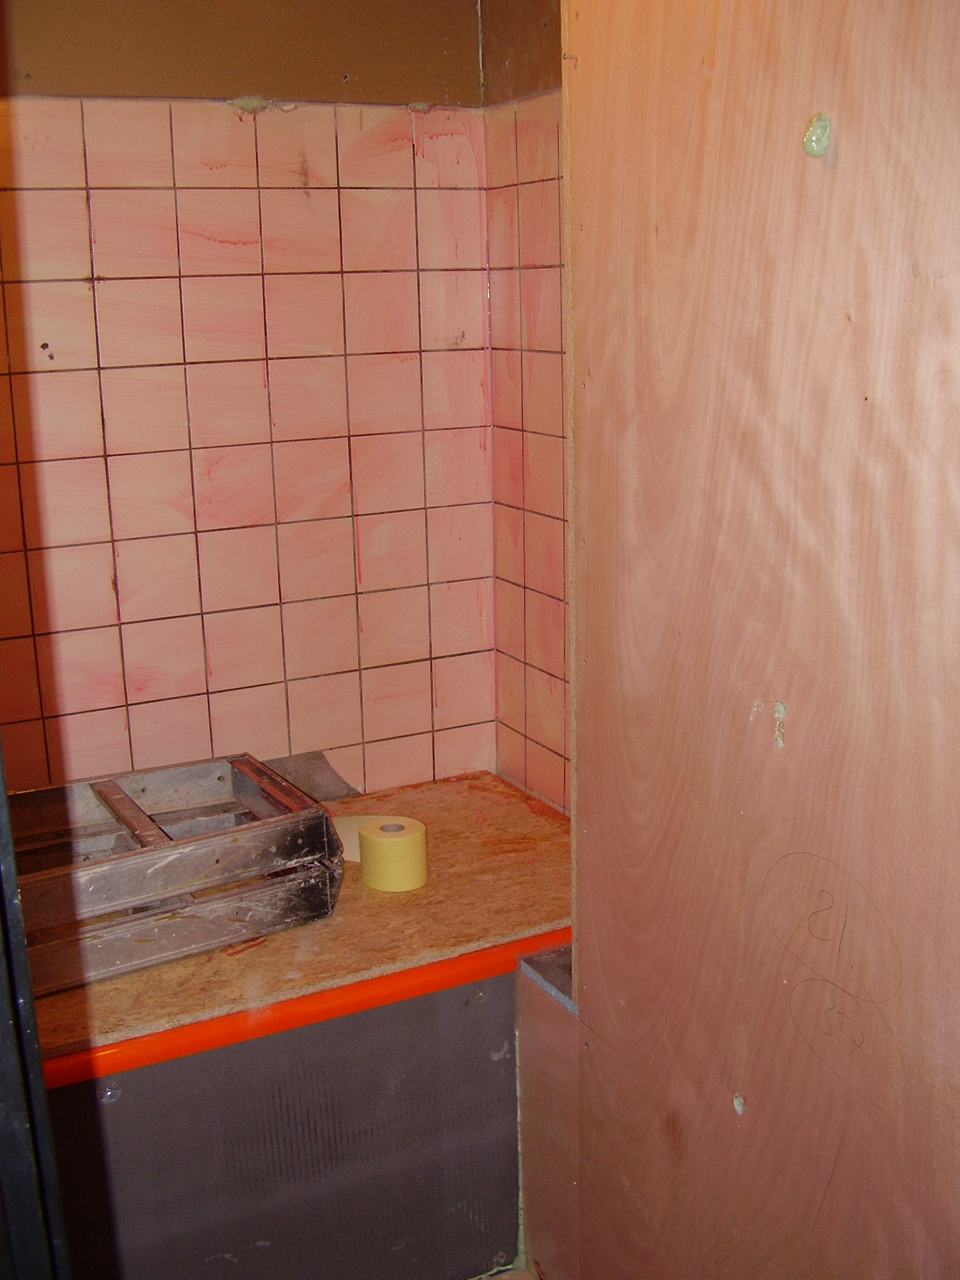 Badkamer renovatie in jaren 70 stijl